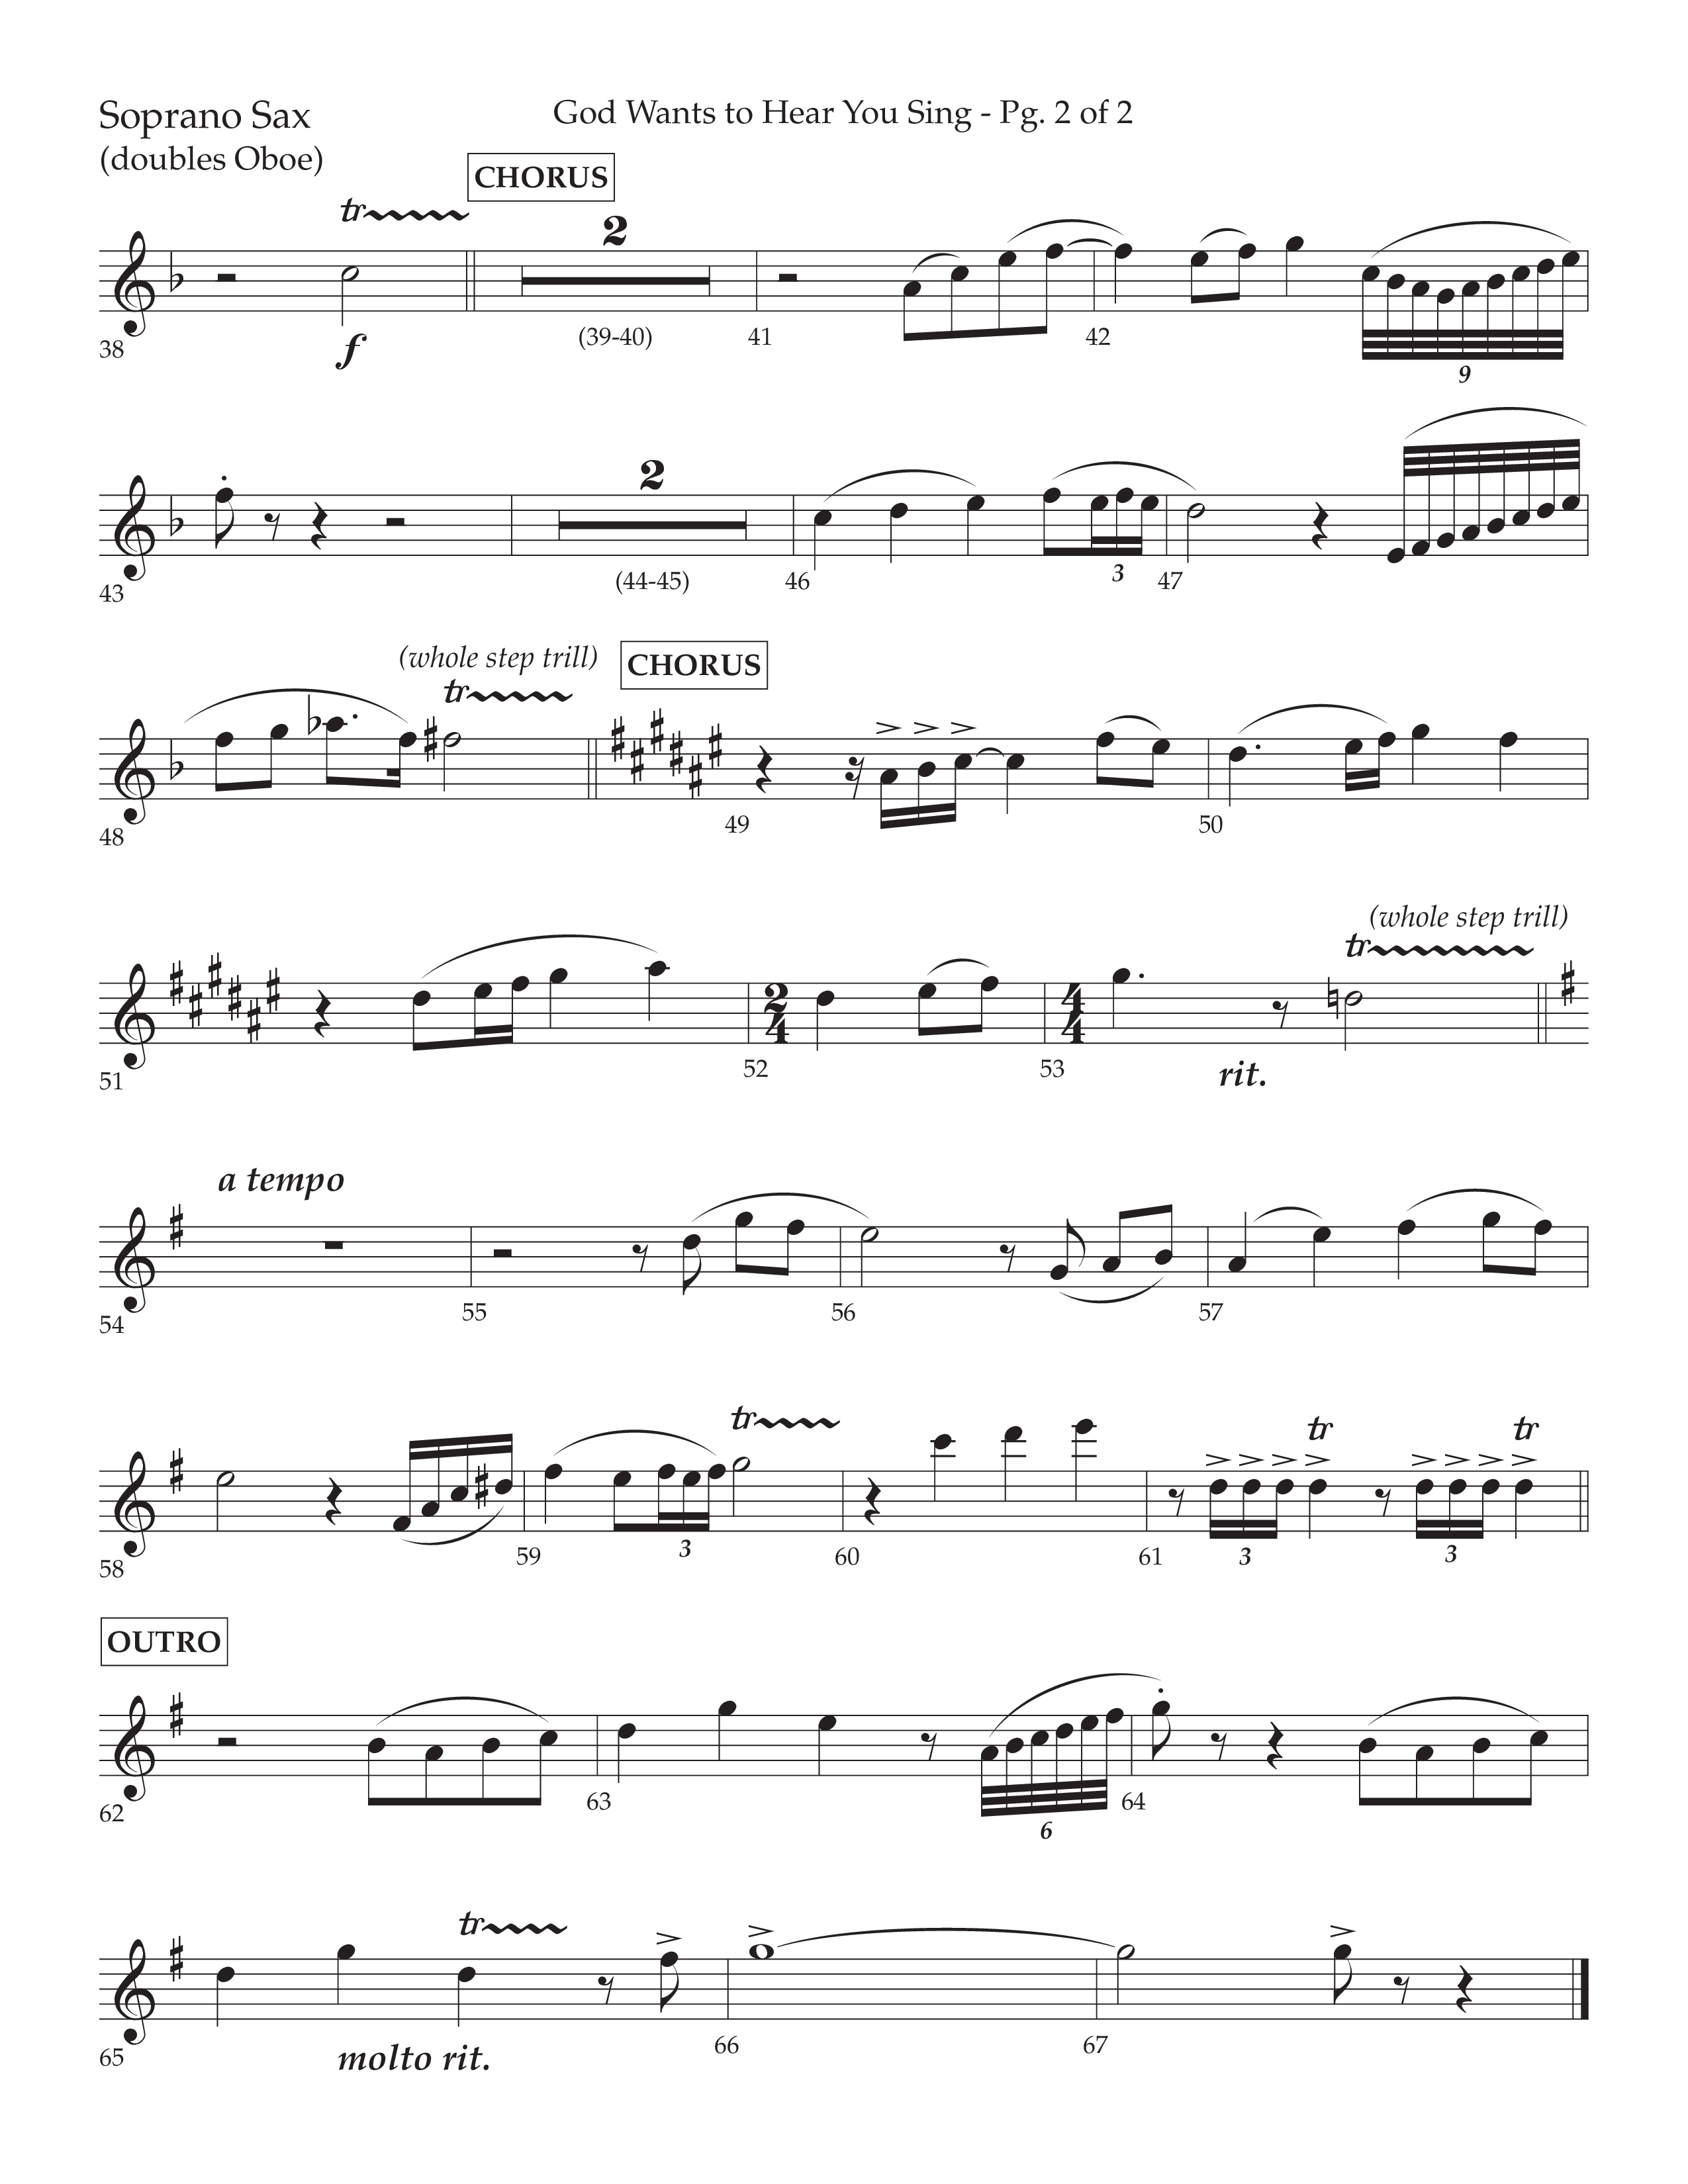 God Wants To Hear You Sing (Choral Anthem SATB) Soprano Sax (Lifeway Choral / Arr. Bradley Knight)